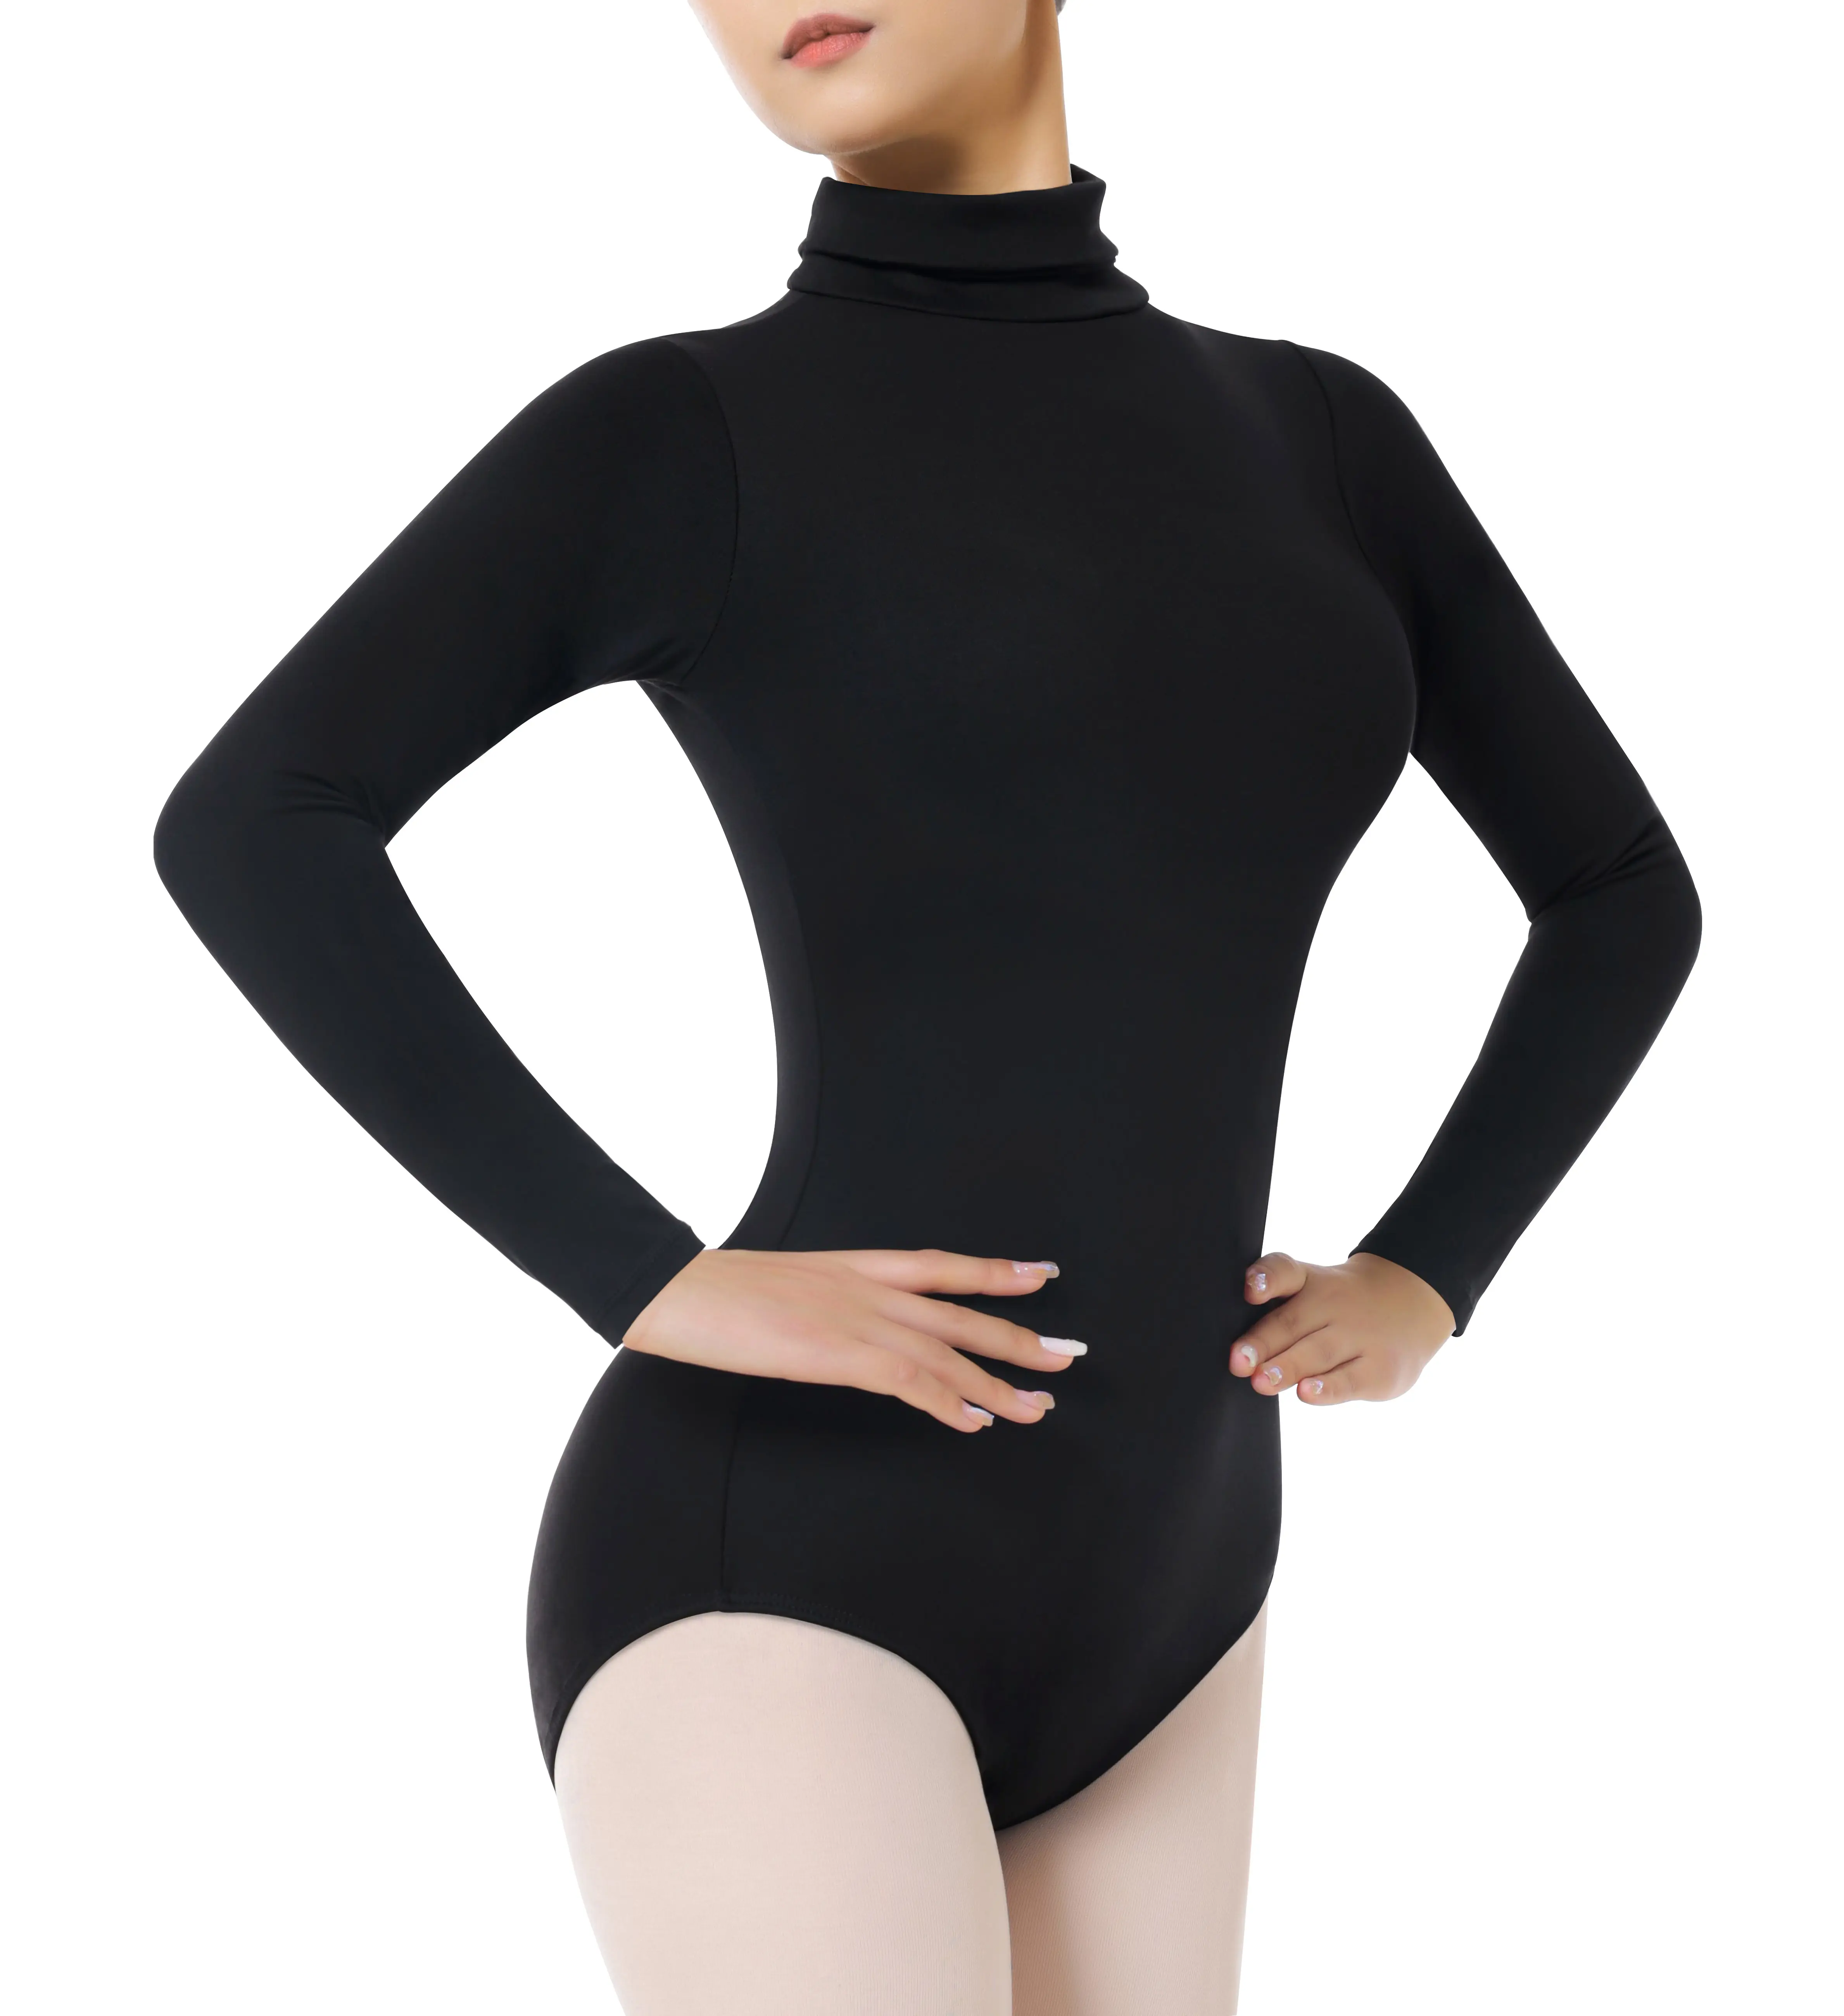 Erwachsene Frauen warmer Nackenrücken voll Frontfutter Rücken Reißverschluss-Stil lange Ärmel Tanz-Bodysuits für rhythmisches Gymnastiktraining